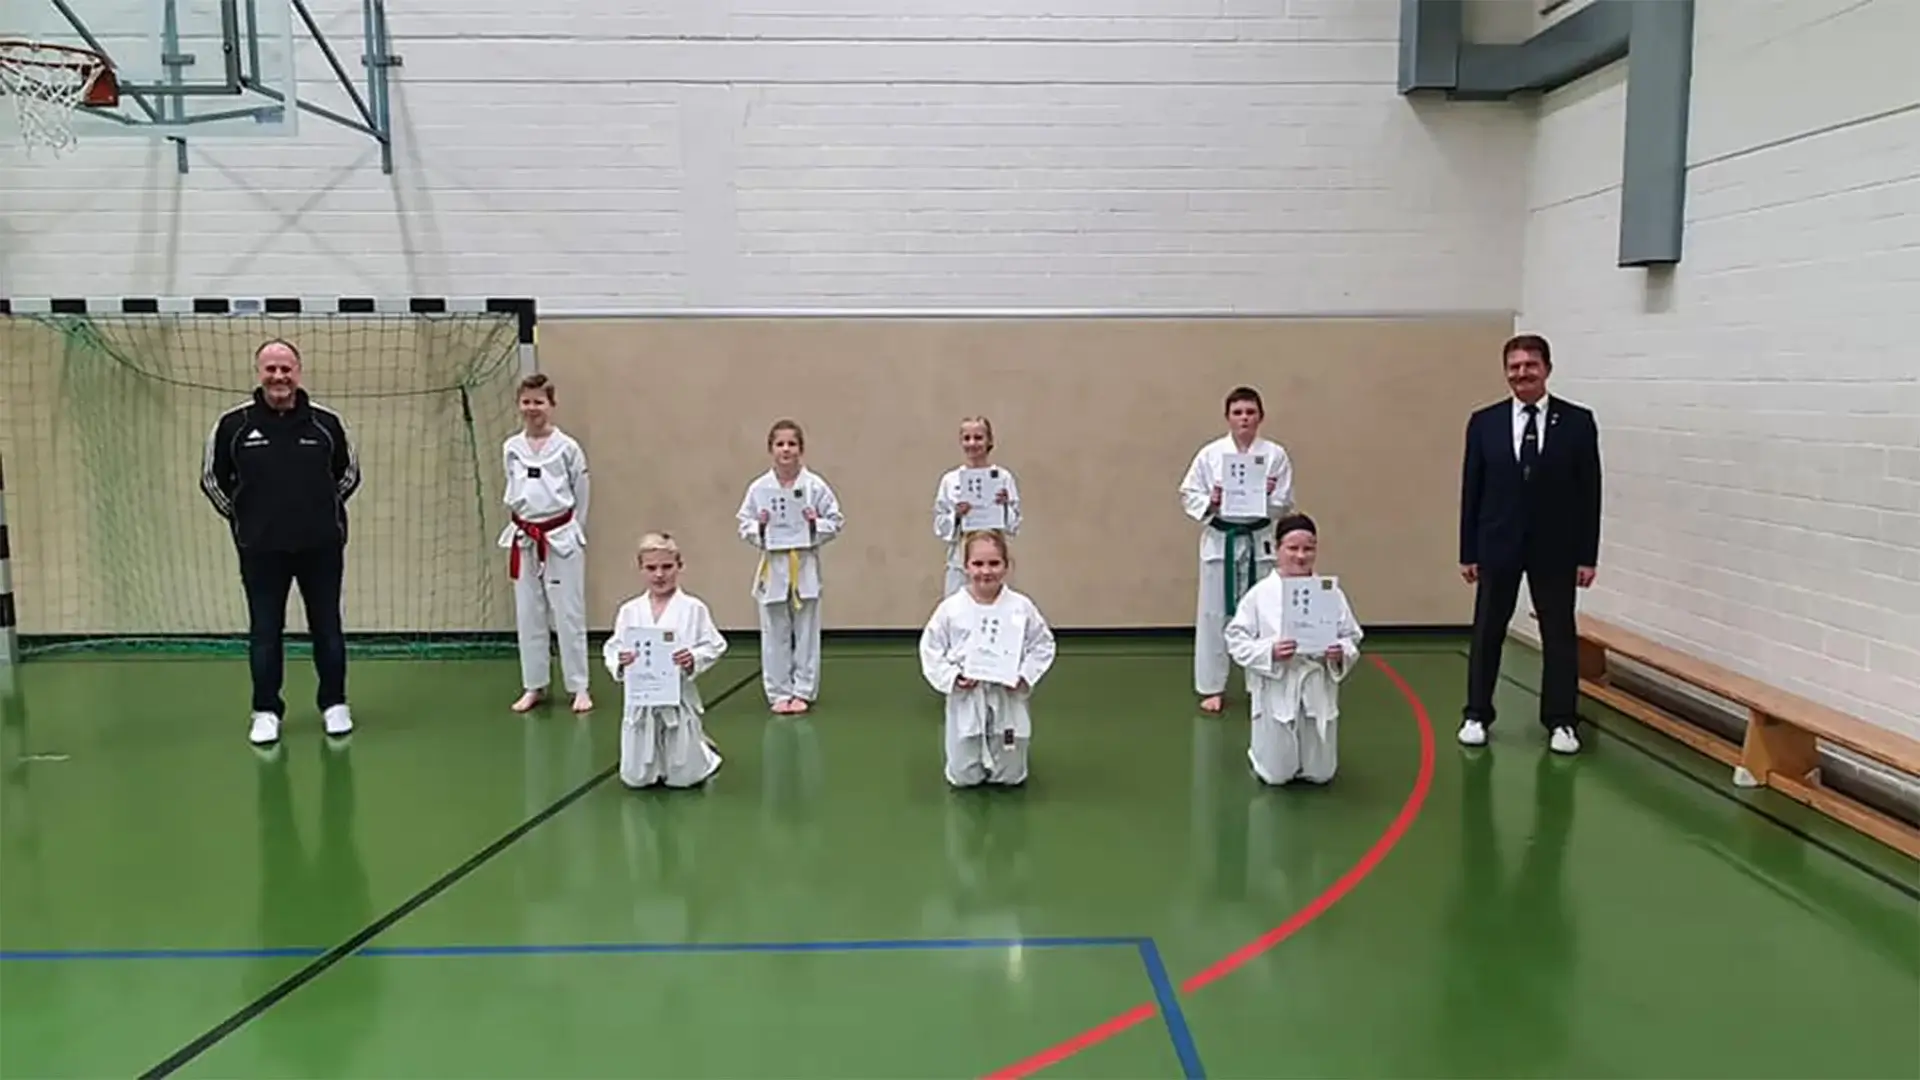 Kup-Prüfung 2020 beim Taekwondo Club Alsdorf e.V.